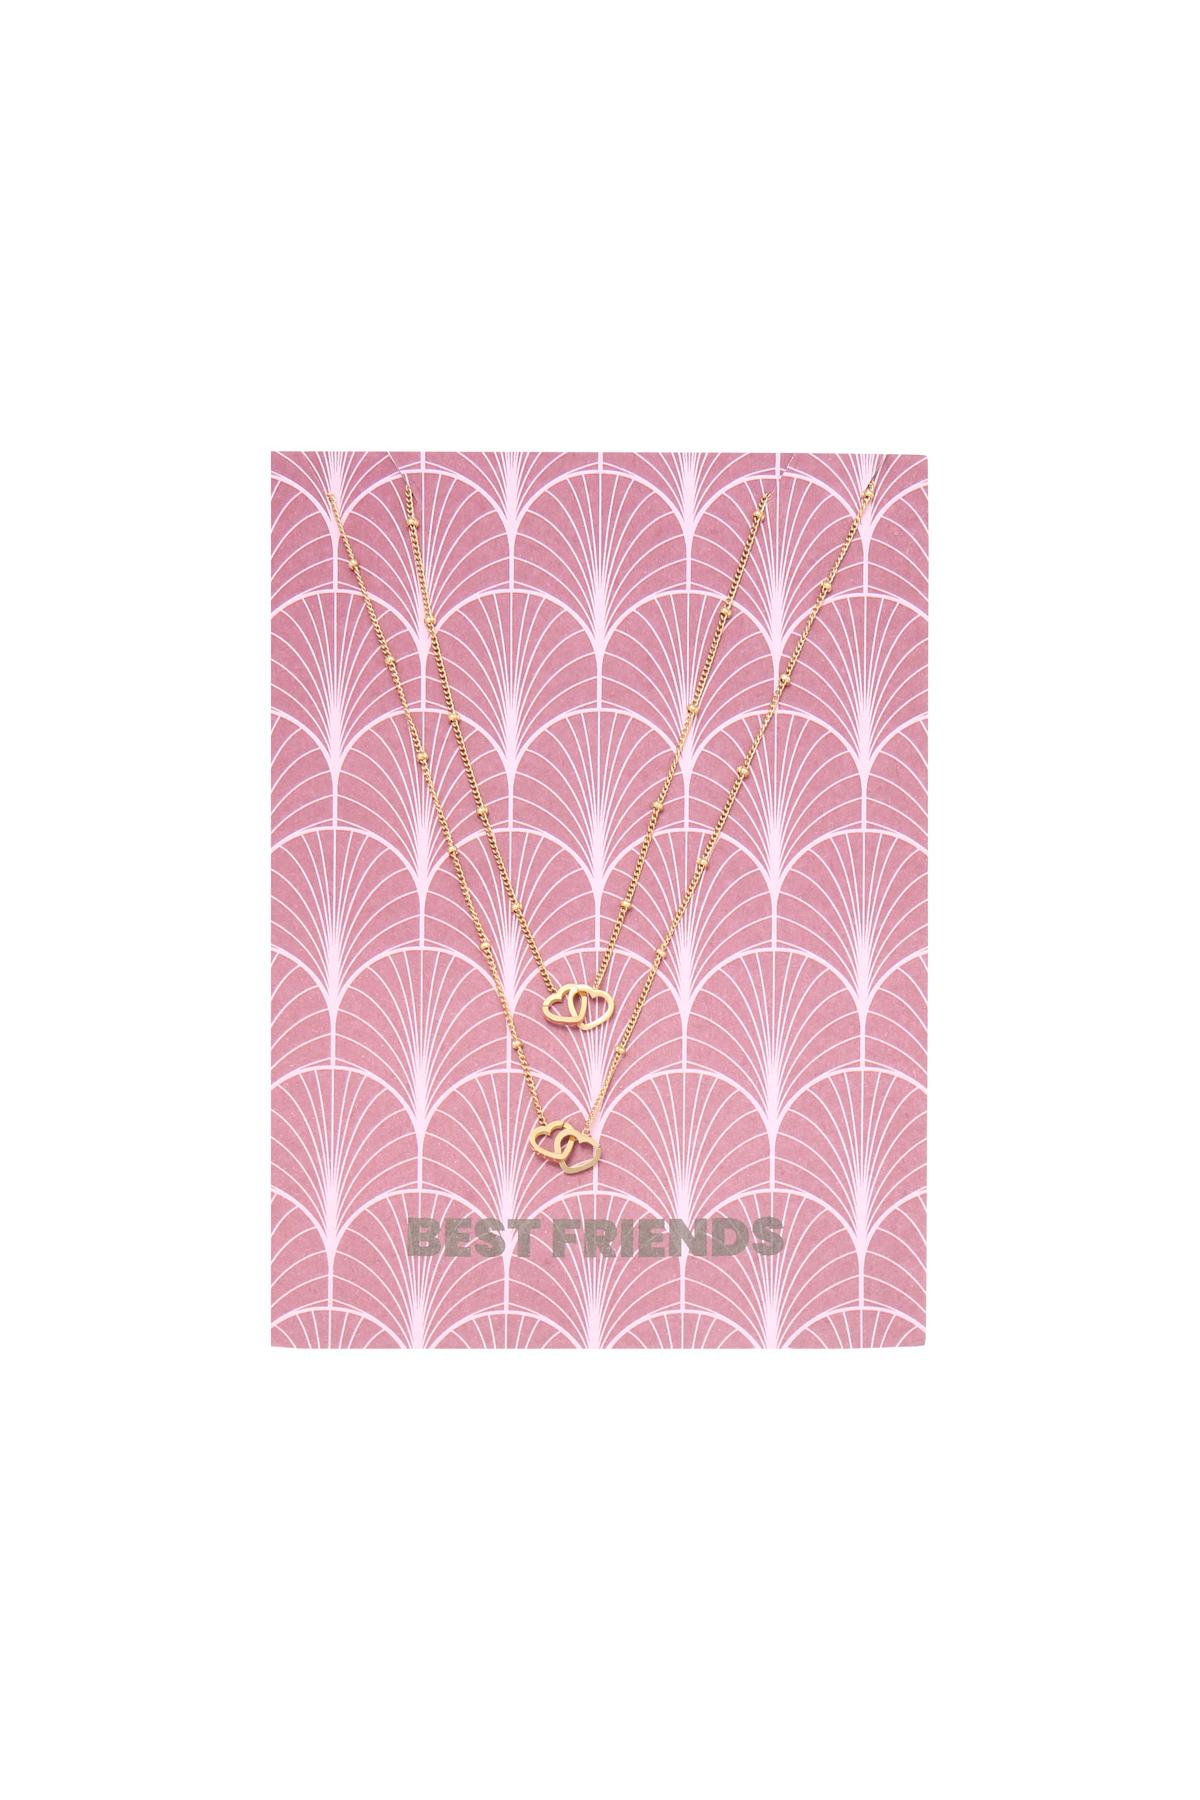 Halskette Card Best Friends Gold Edelstahl h5 